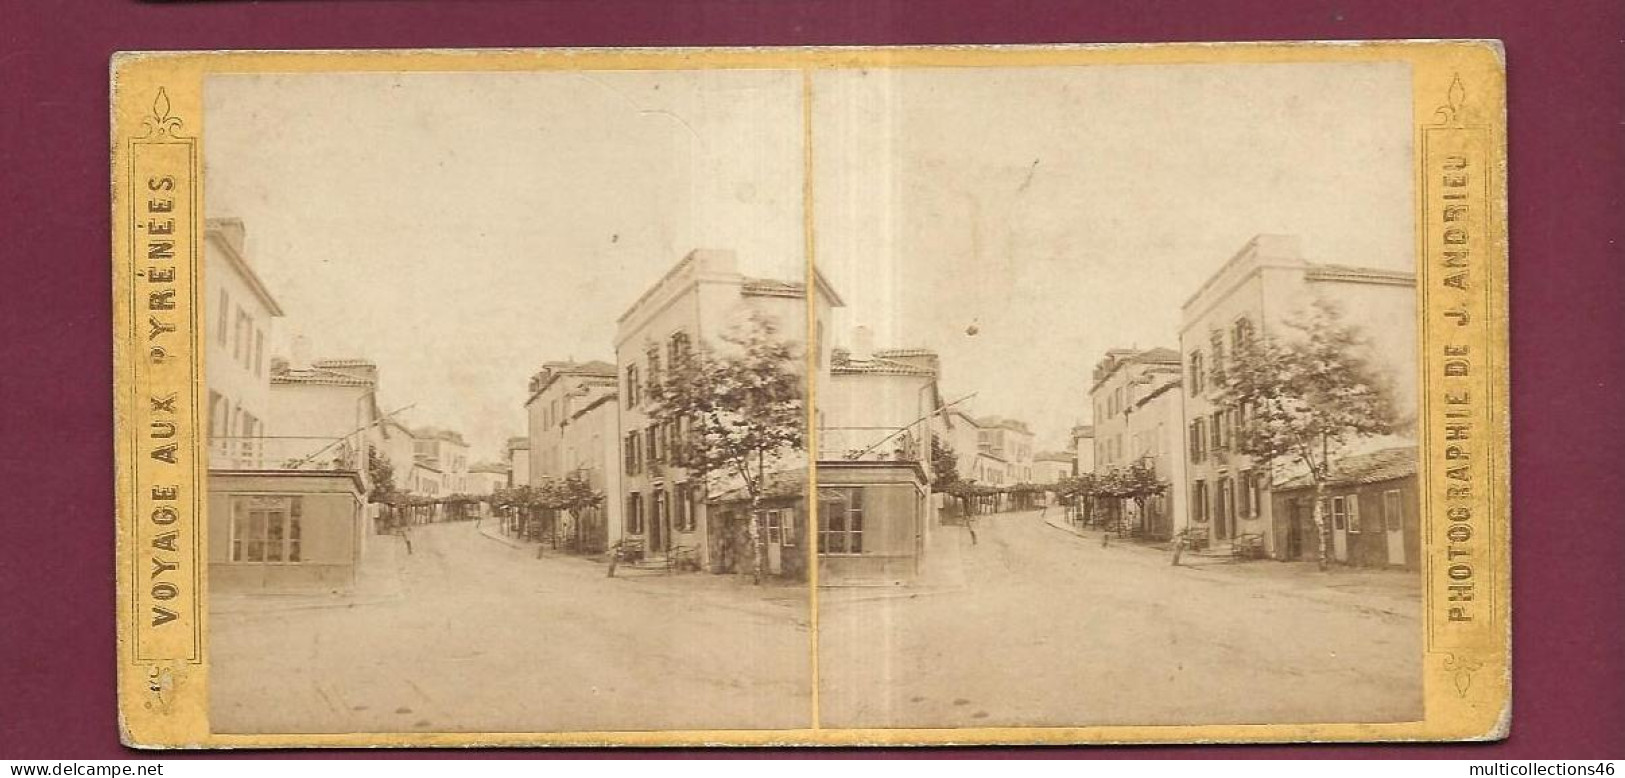 190424 - PHOTO STEREO PAPIER - VOYAGE AUX PYRENEES J ANDRIEU PARIS - BIARRITZ Rue Du Port Vieux - Photos Stéréoscopiques